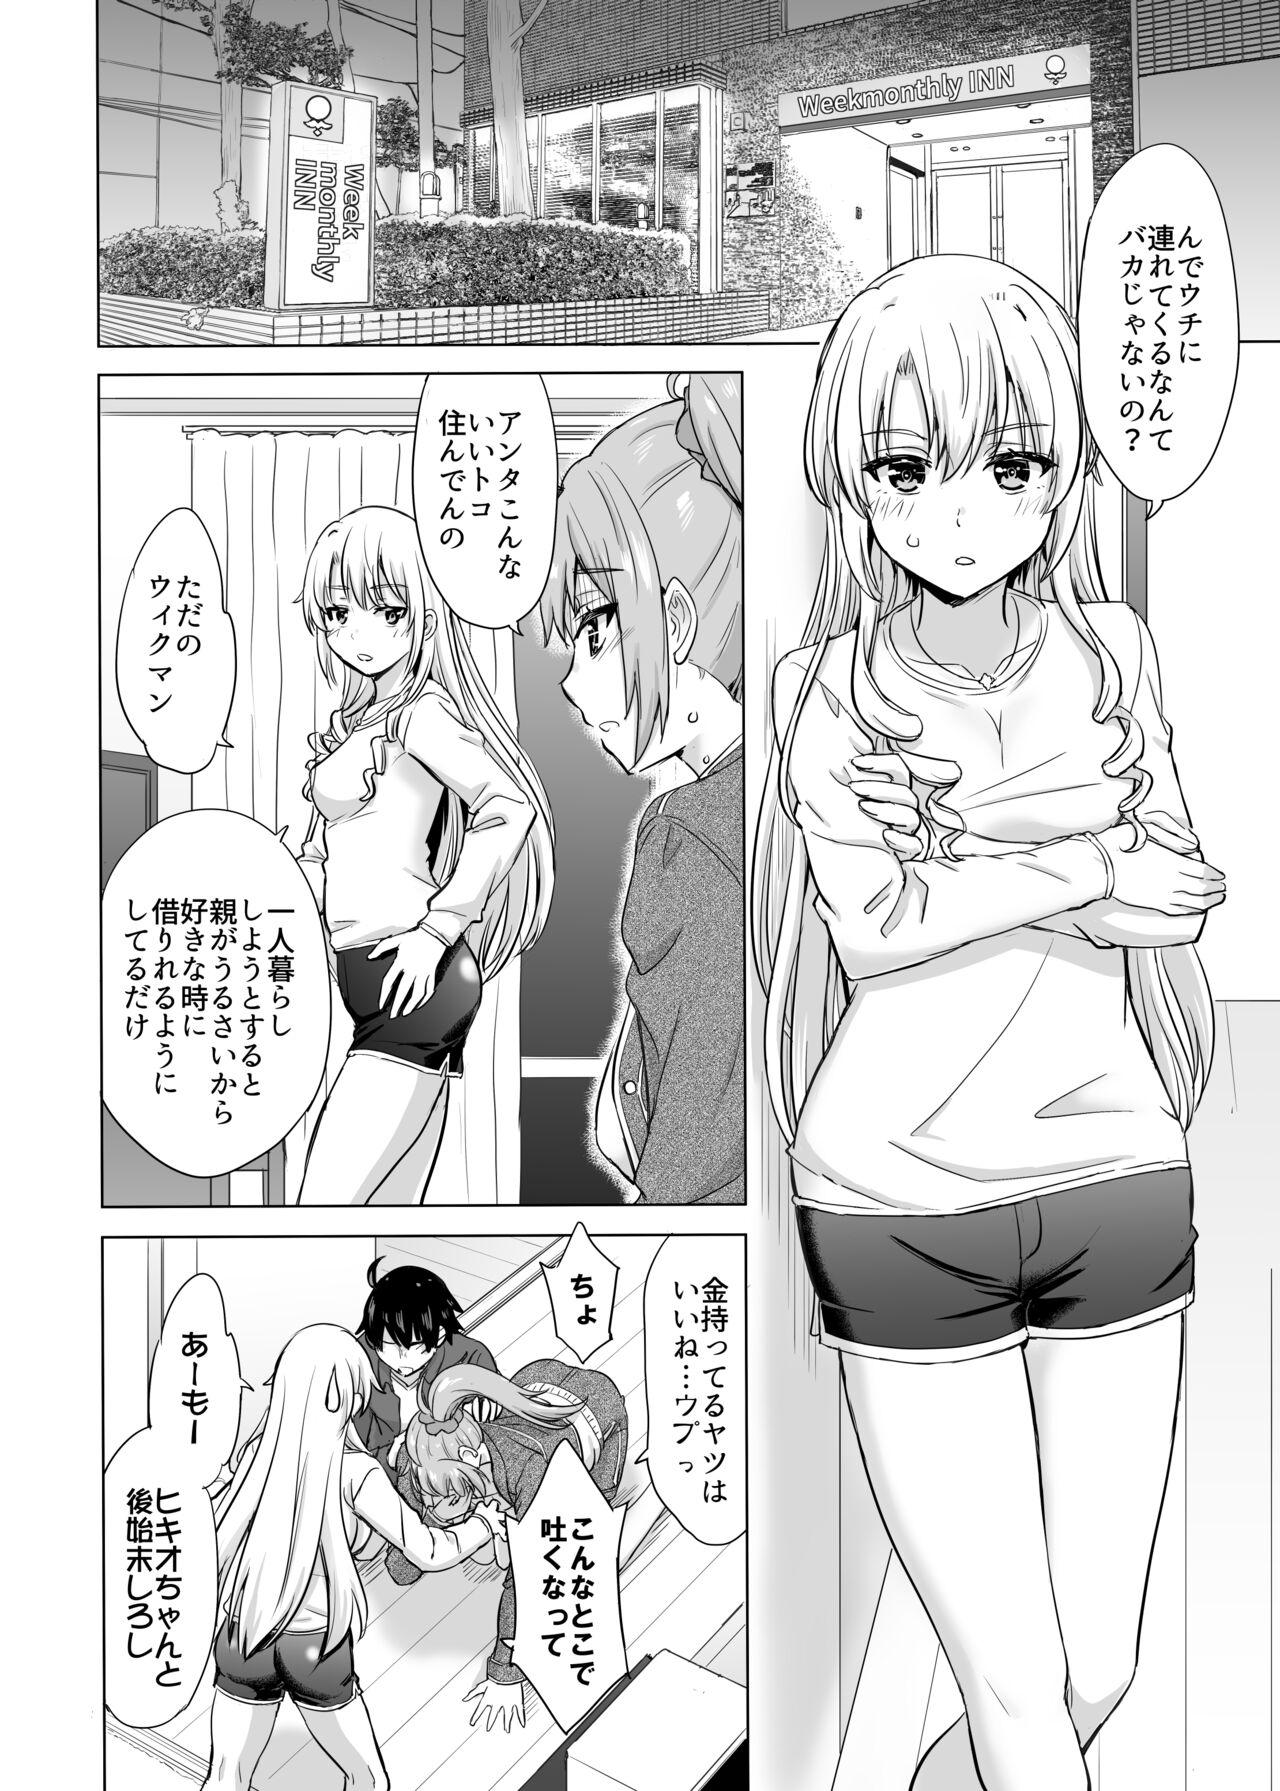 Friend Ashi-san Saki Saki Manga - Yahari ore no seishun love come wa machigatteiru Exotic - Picture 2